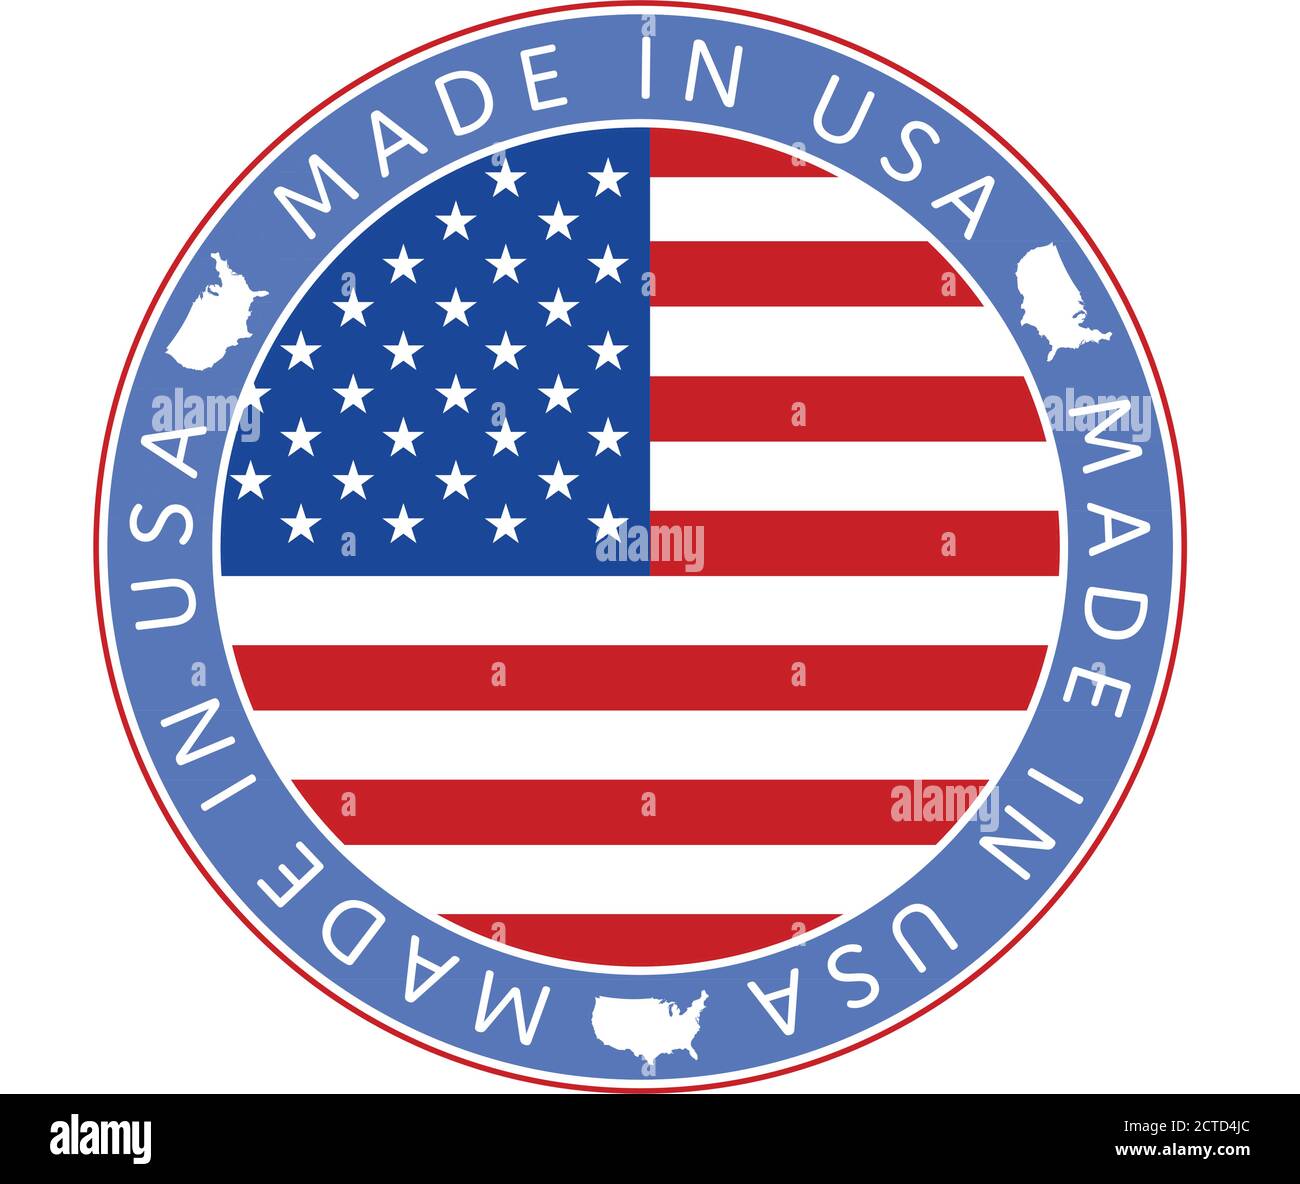 Festa nazionale americana. Icona Made in USA. BANDIERE AMERICANE con stelle americane, strisce e colori nazionali. Illustrazione Vettoriale